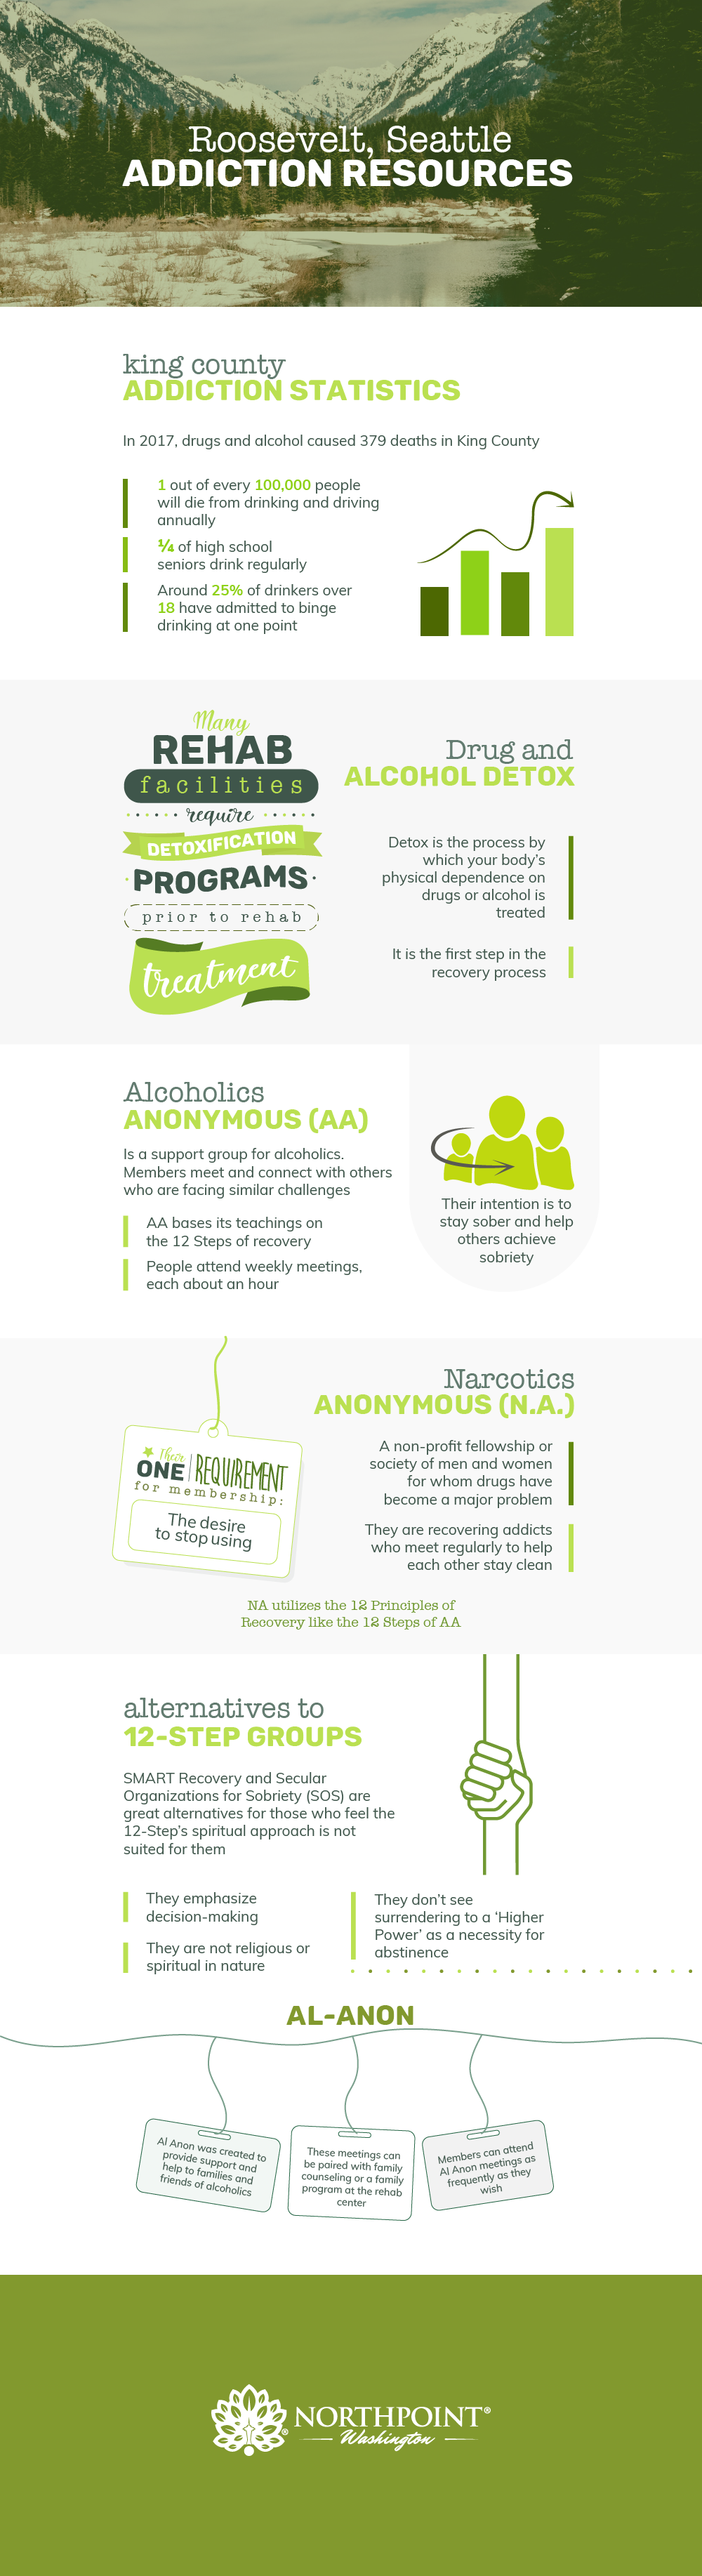 Roosevelt, Washington Addiction Resources Infographic